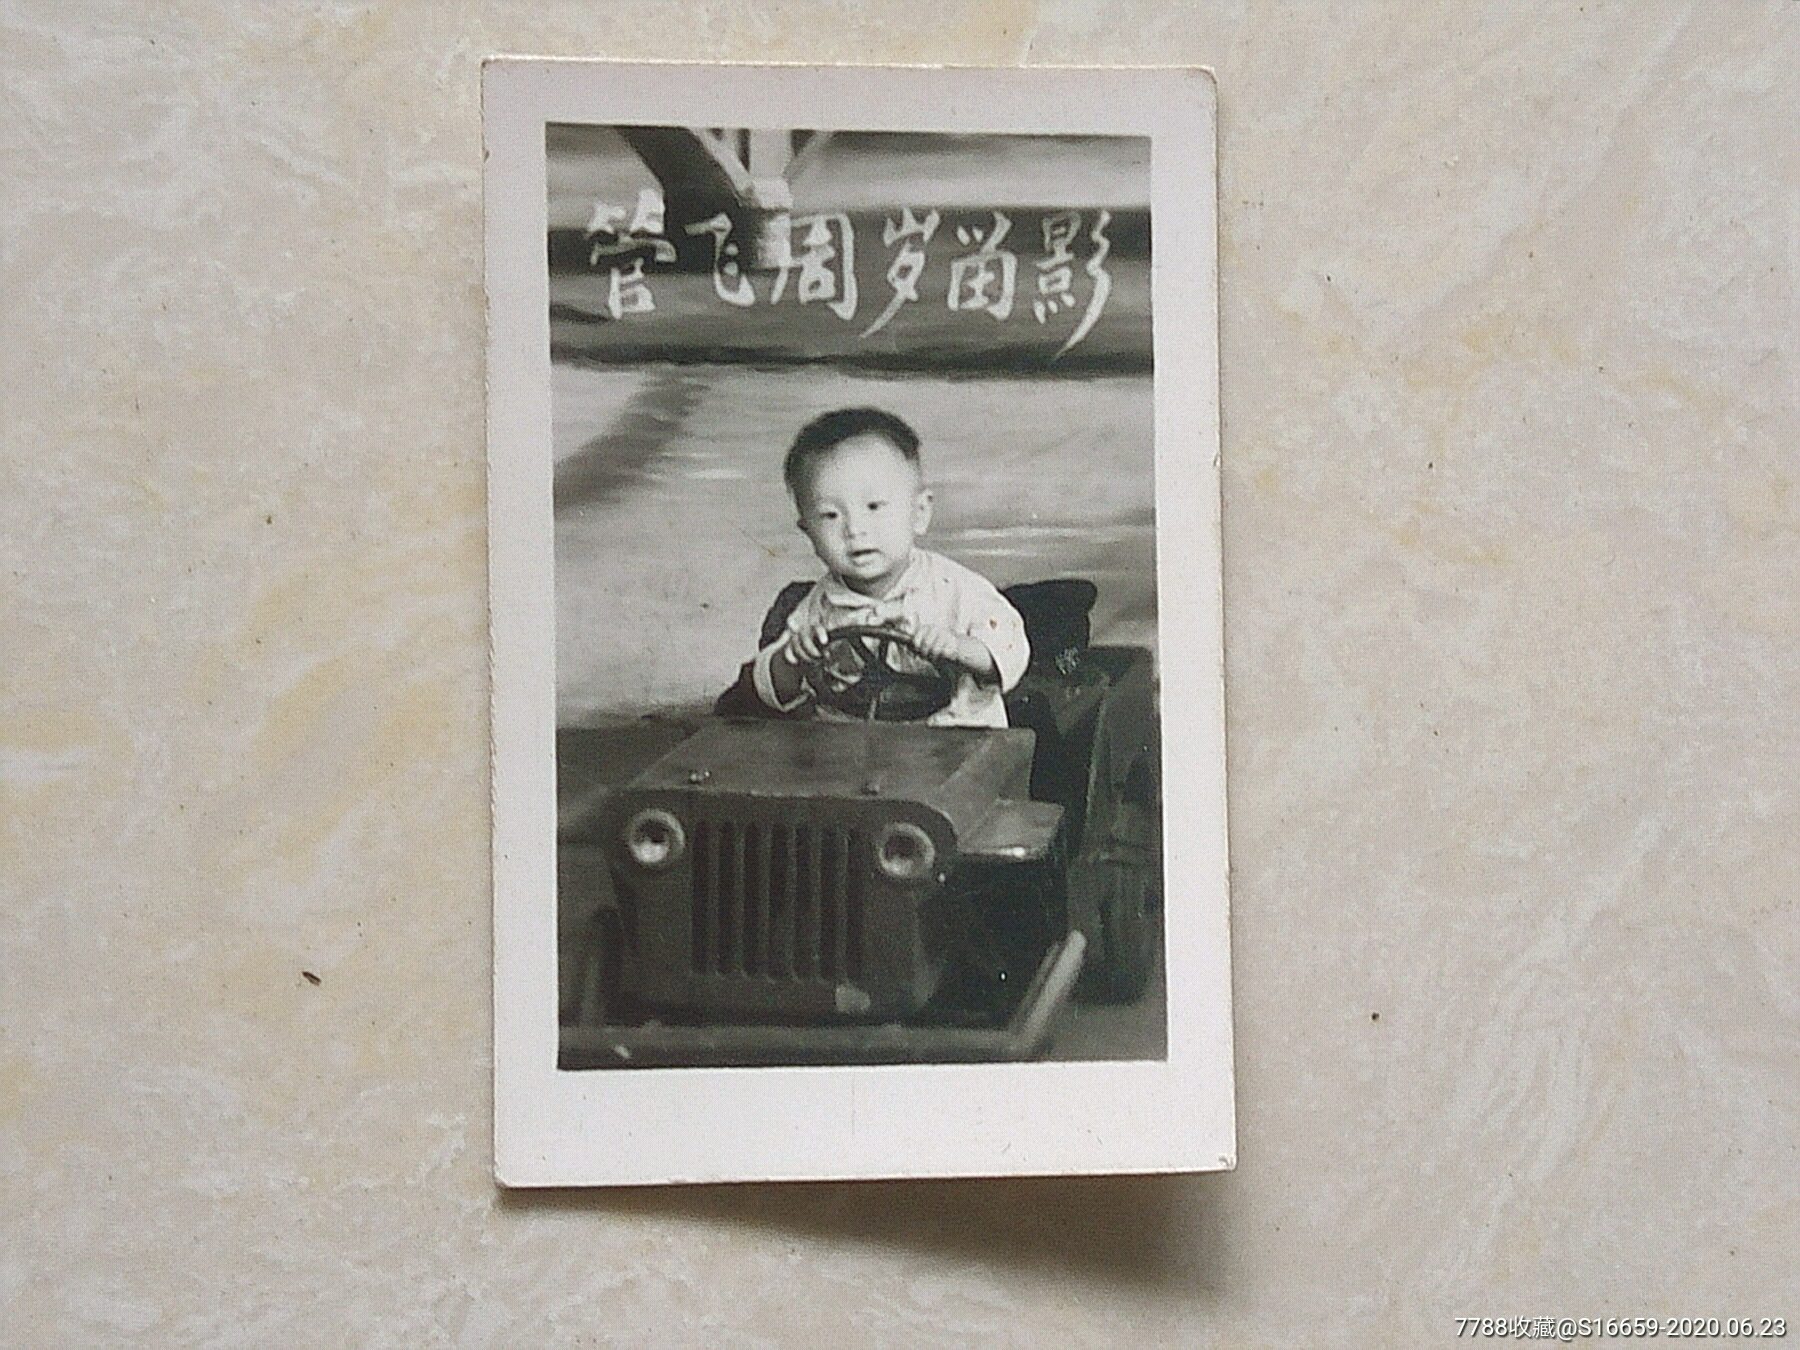 八十年代儿童坐小汽车道具照相馆艺术照老照片